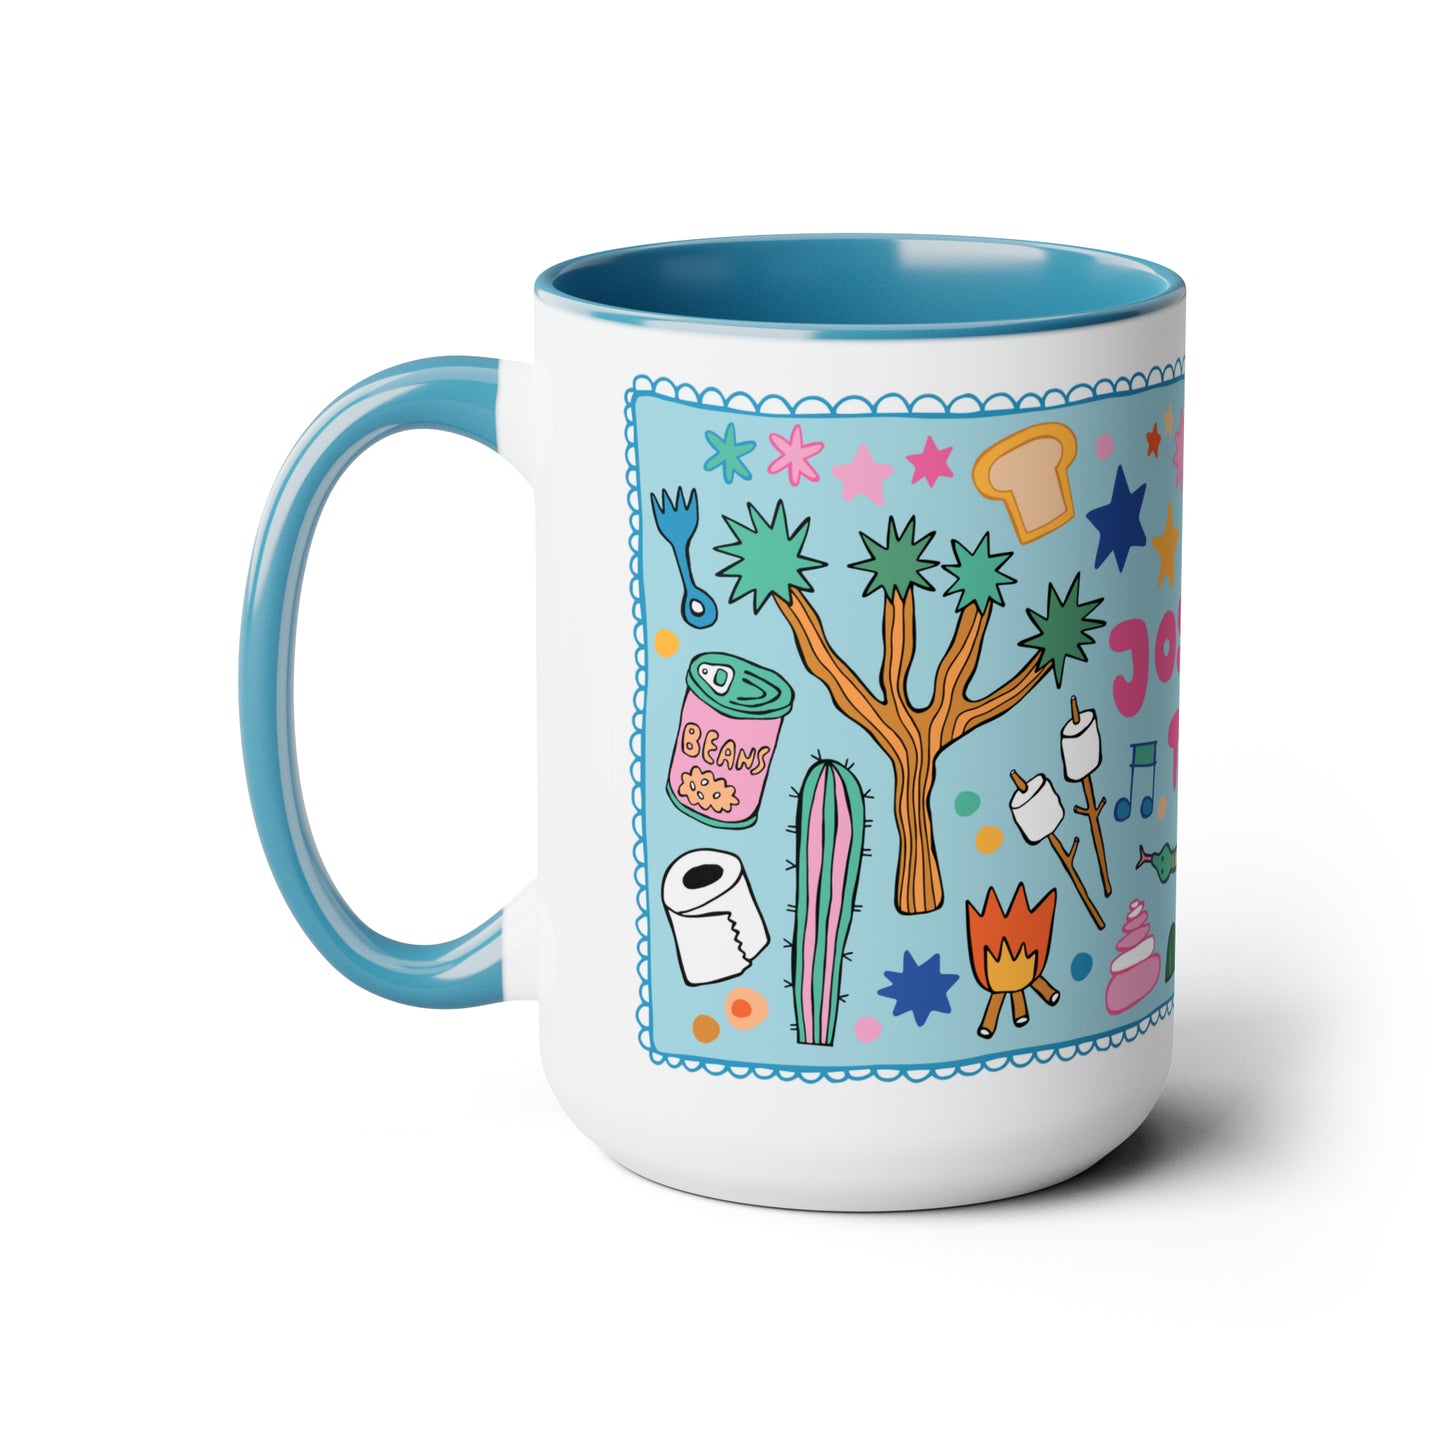 Joshua Tree - *BIG* Coffee Mug (15oz, blue)